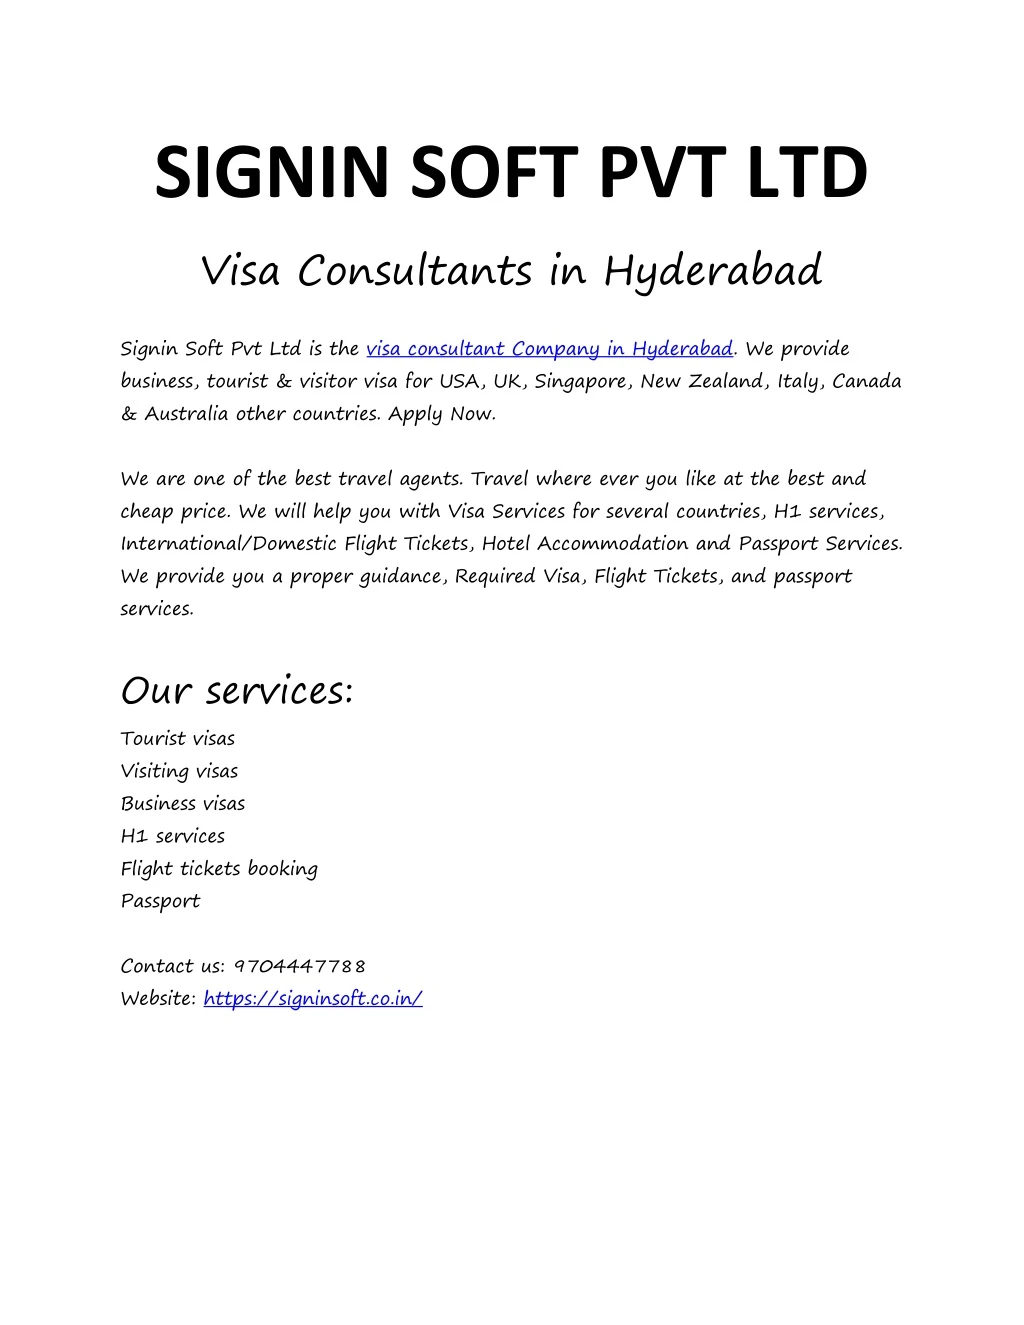 signin soft pvt ltd visa consultants in hyderabad